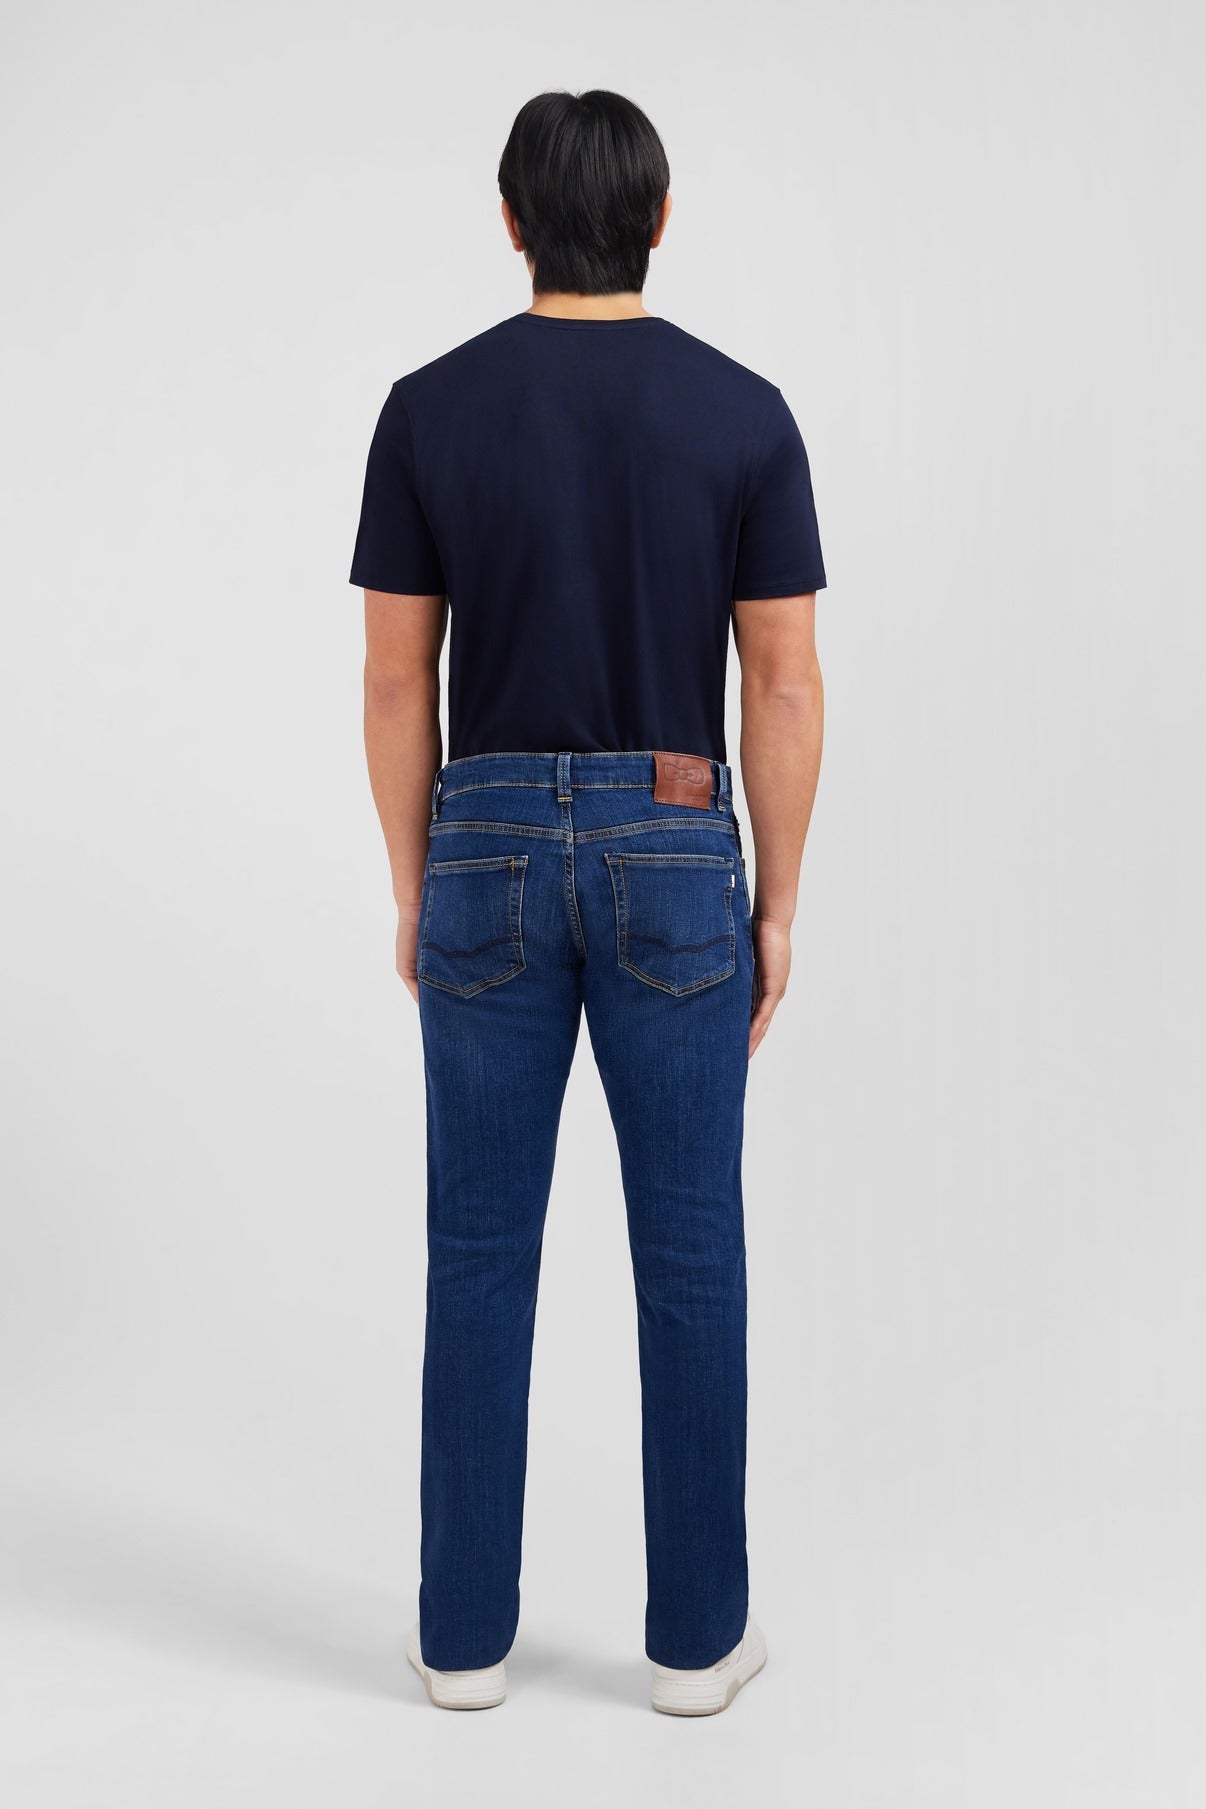 Jean bleu en coton stretch - Image 3